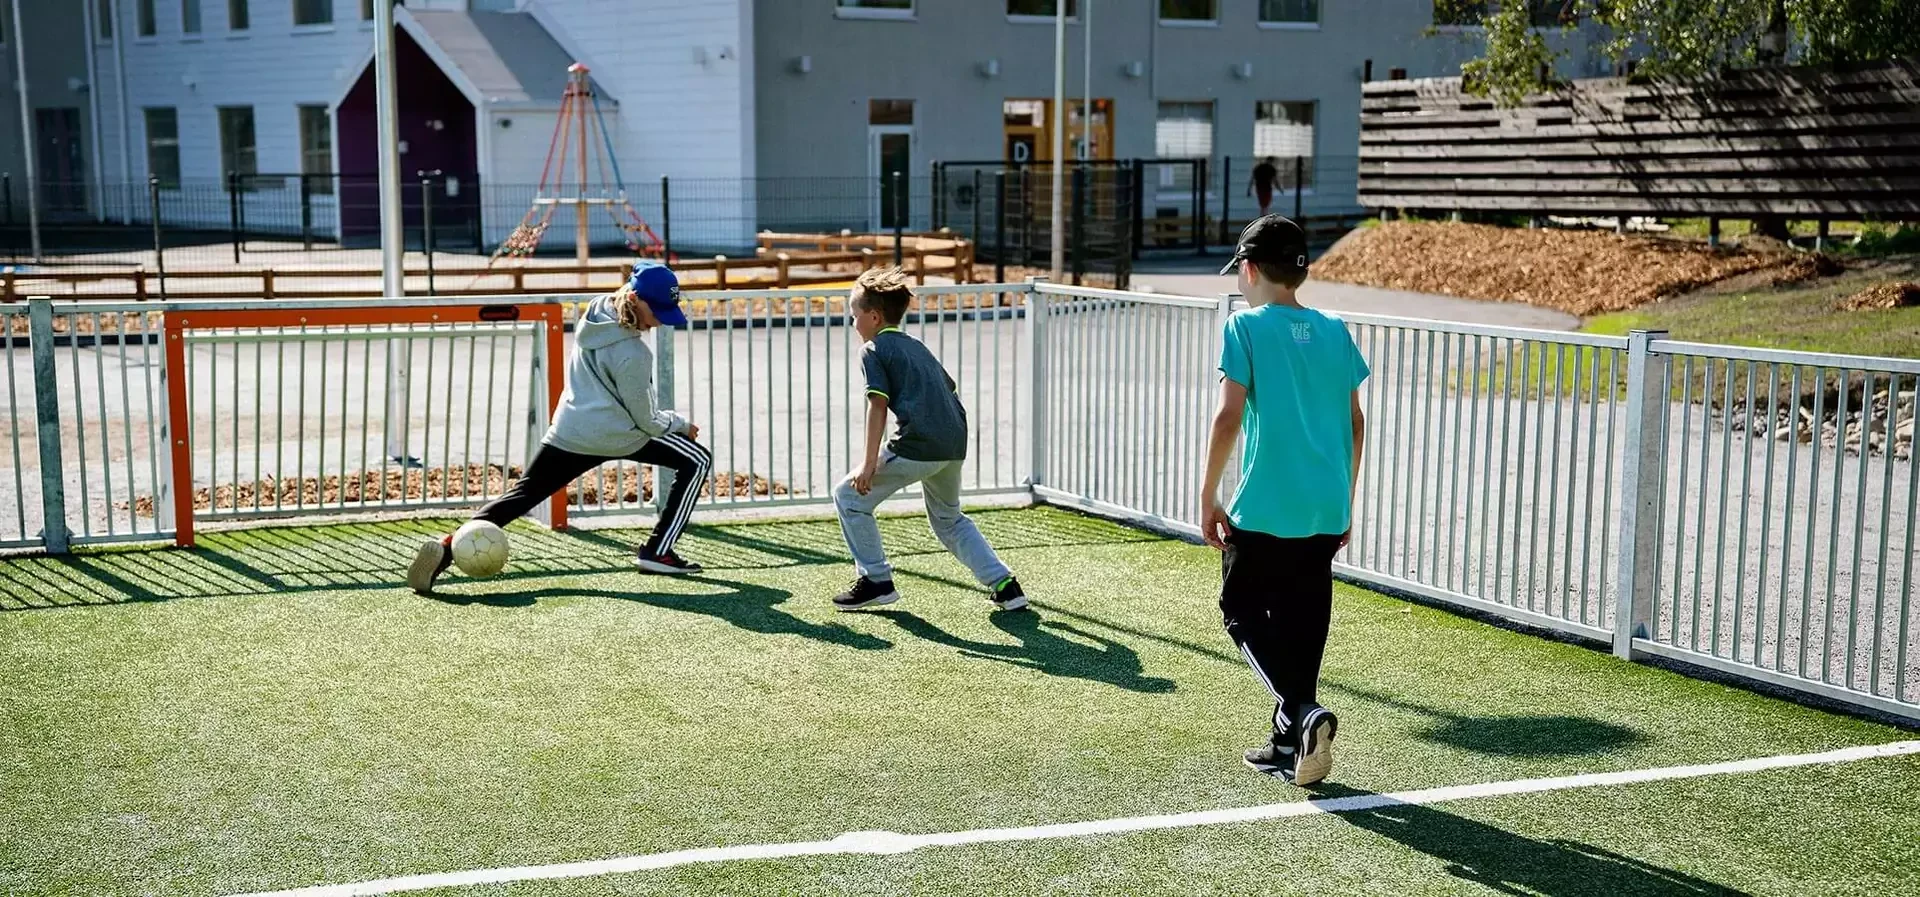 kinderen spelen voetbal op een multisport multifunctioneel speelterrein